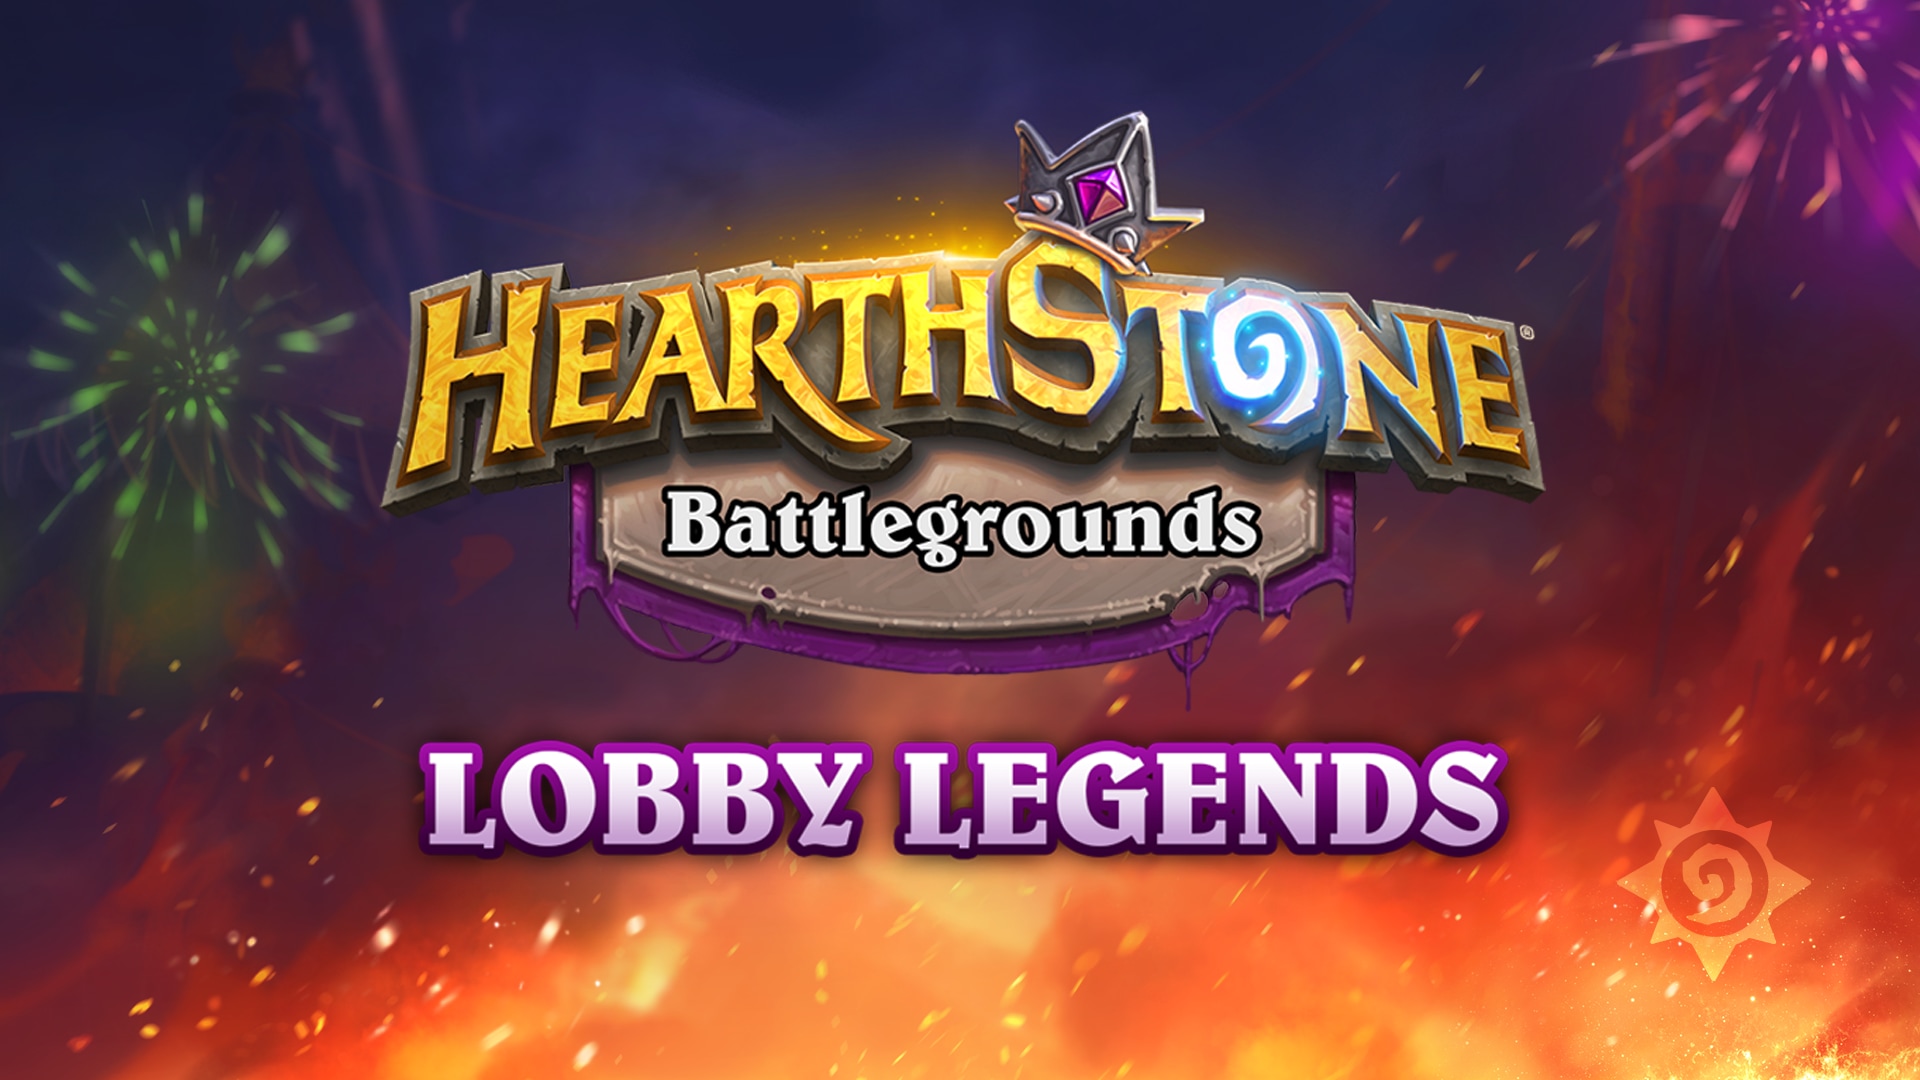 O Festival do Fogo chegou ao Campos de Batalha: Lobby Legends!